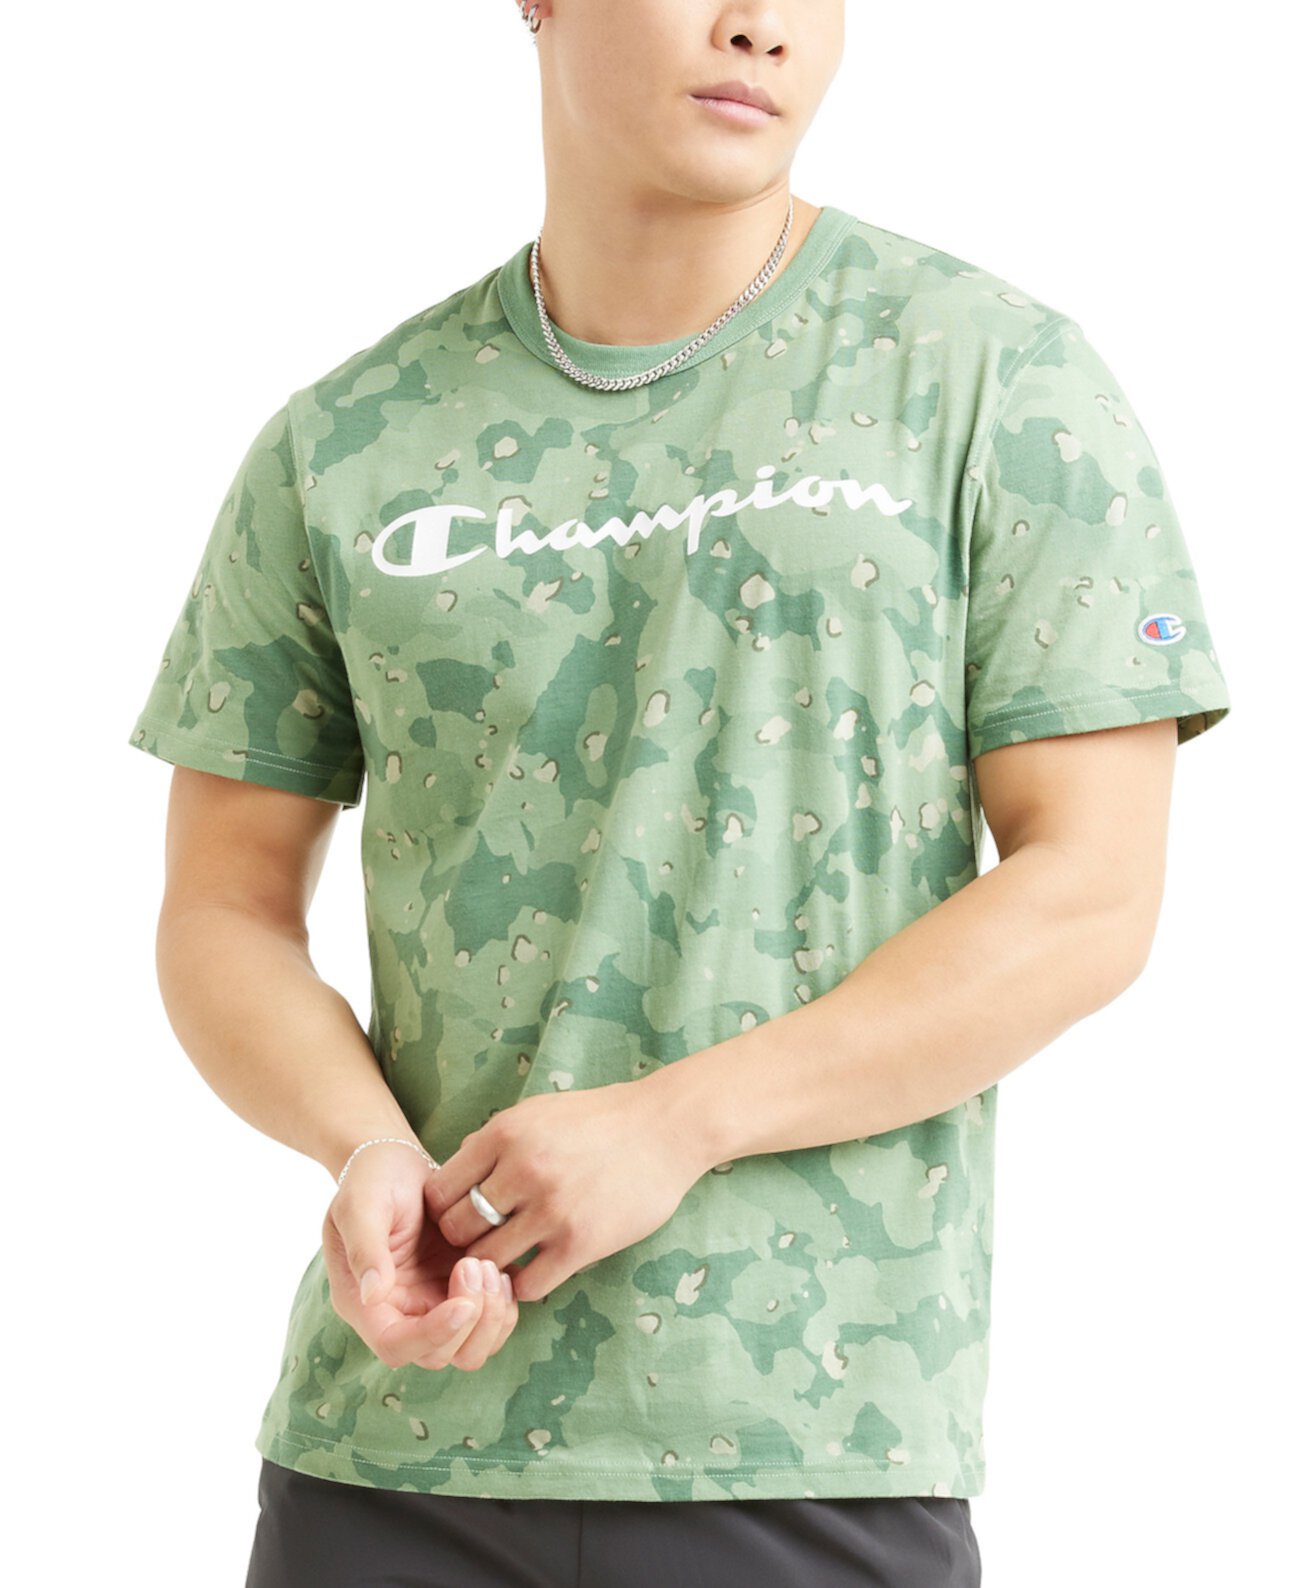 Мужская футболка стандартной посадки с камуфляжным принтом и логотипом Champion